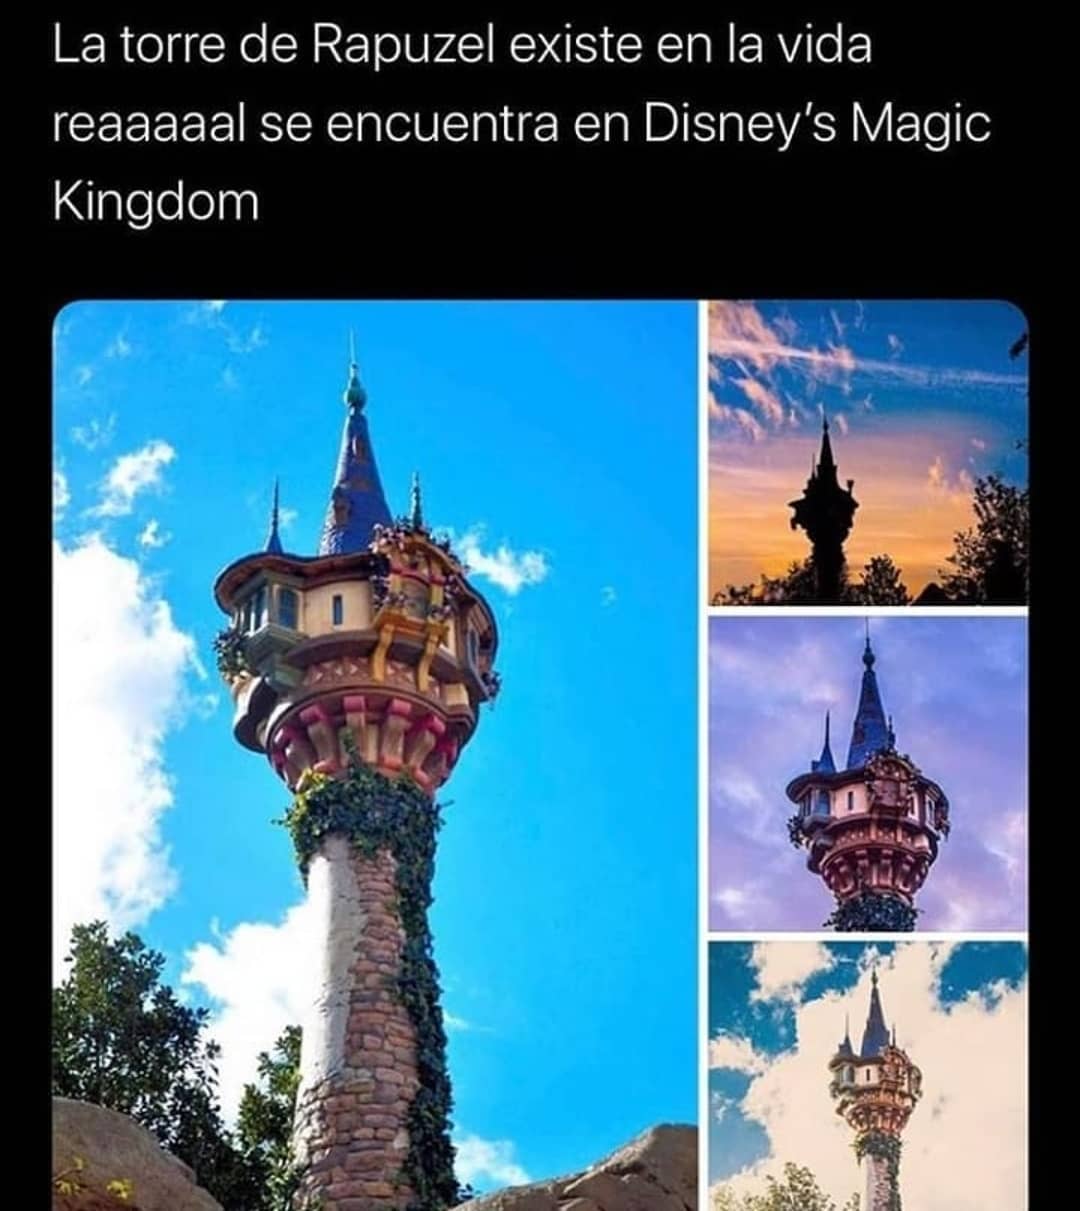 La torre de Rapuzel existe en la vida reaaaaal se encuentra en Disney's MagiC Kingdom.